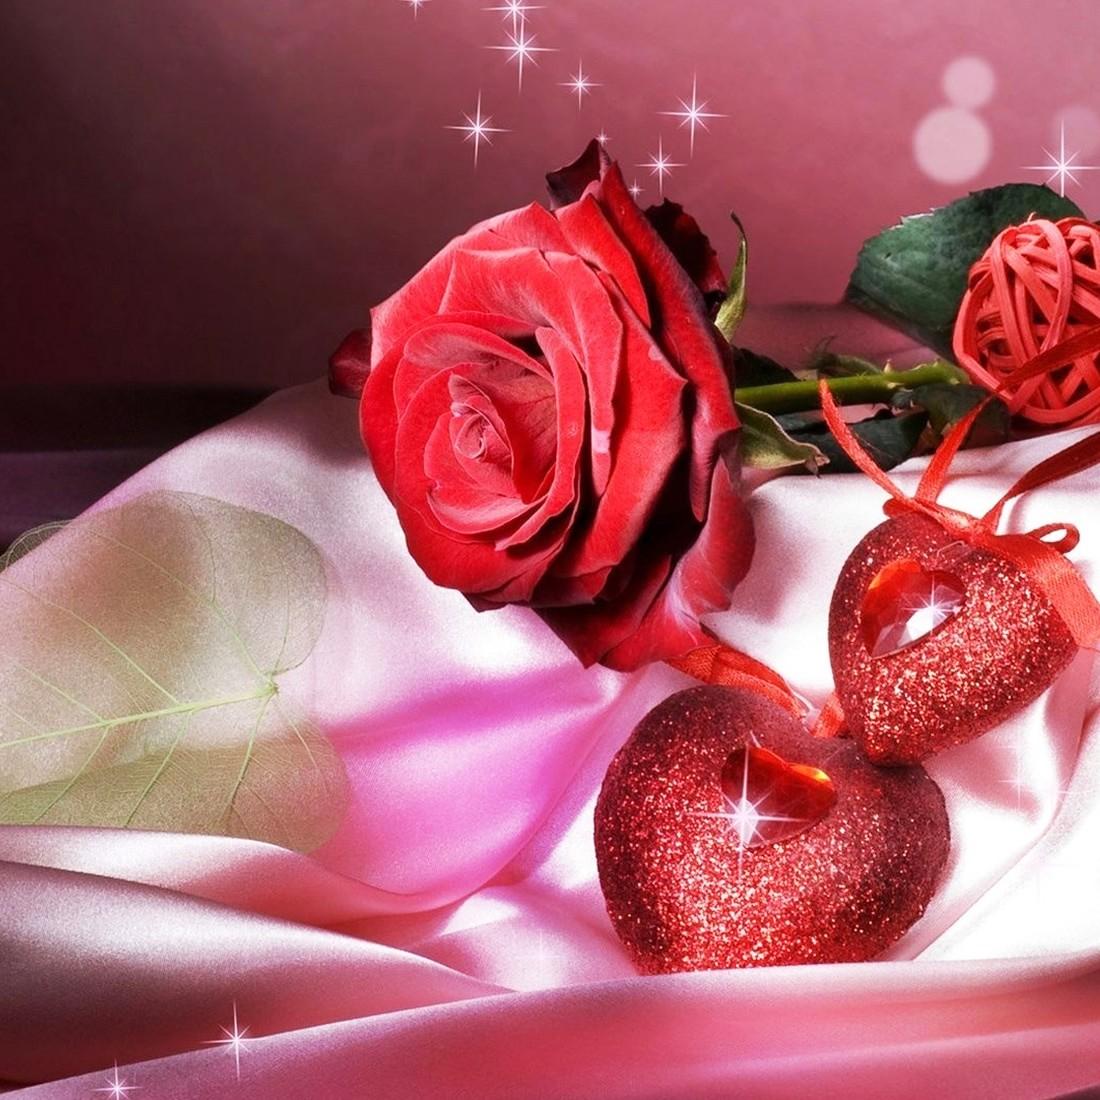 rose live wallpaper download,pink,red,garden roses,rose,petal